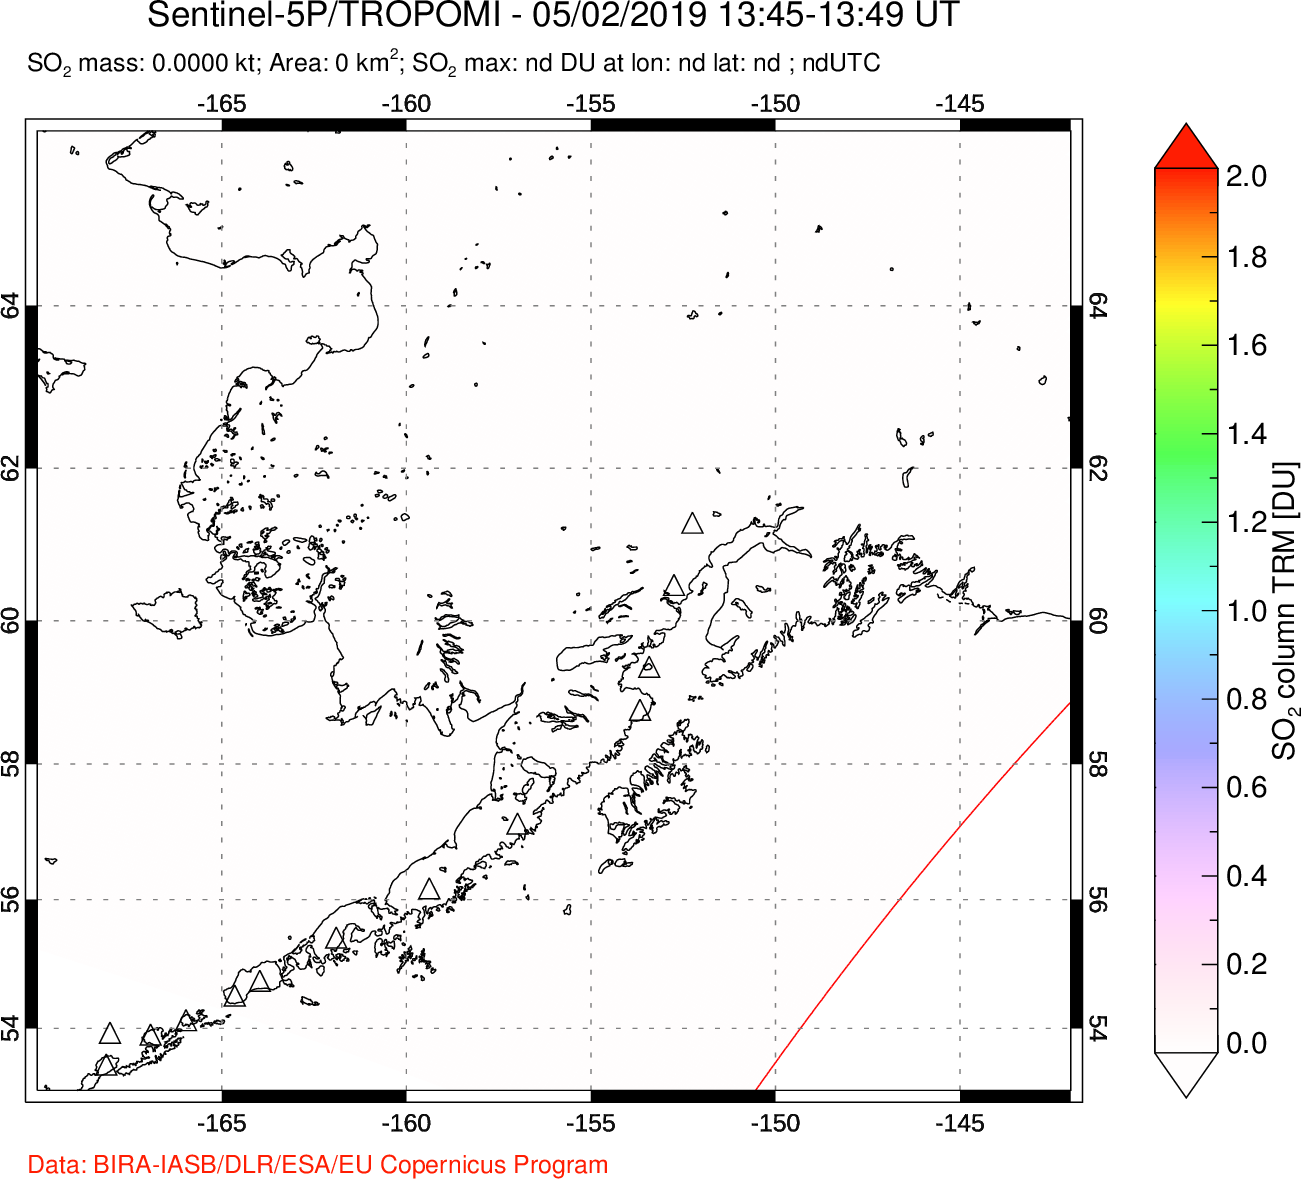 A sulfur dioxide image over Alaska, USA on May 02, 2019.